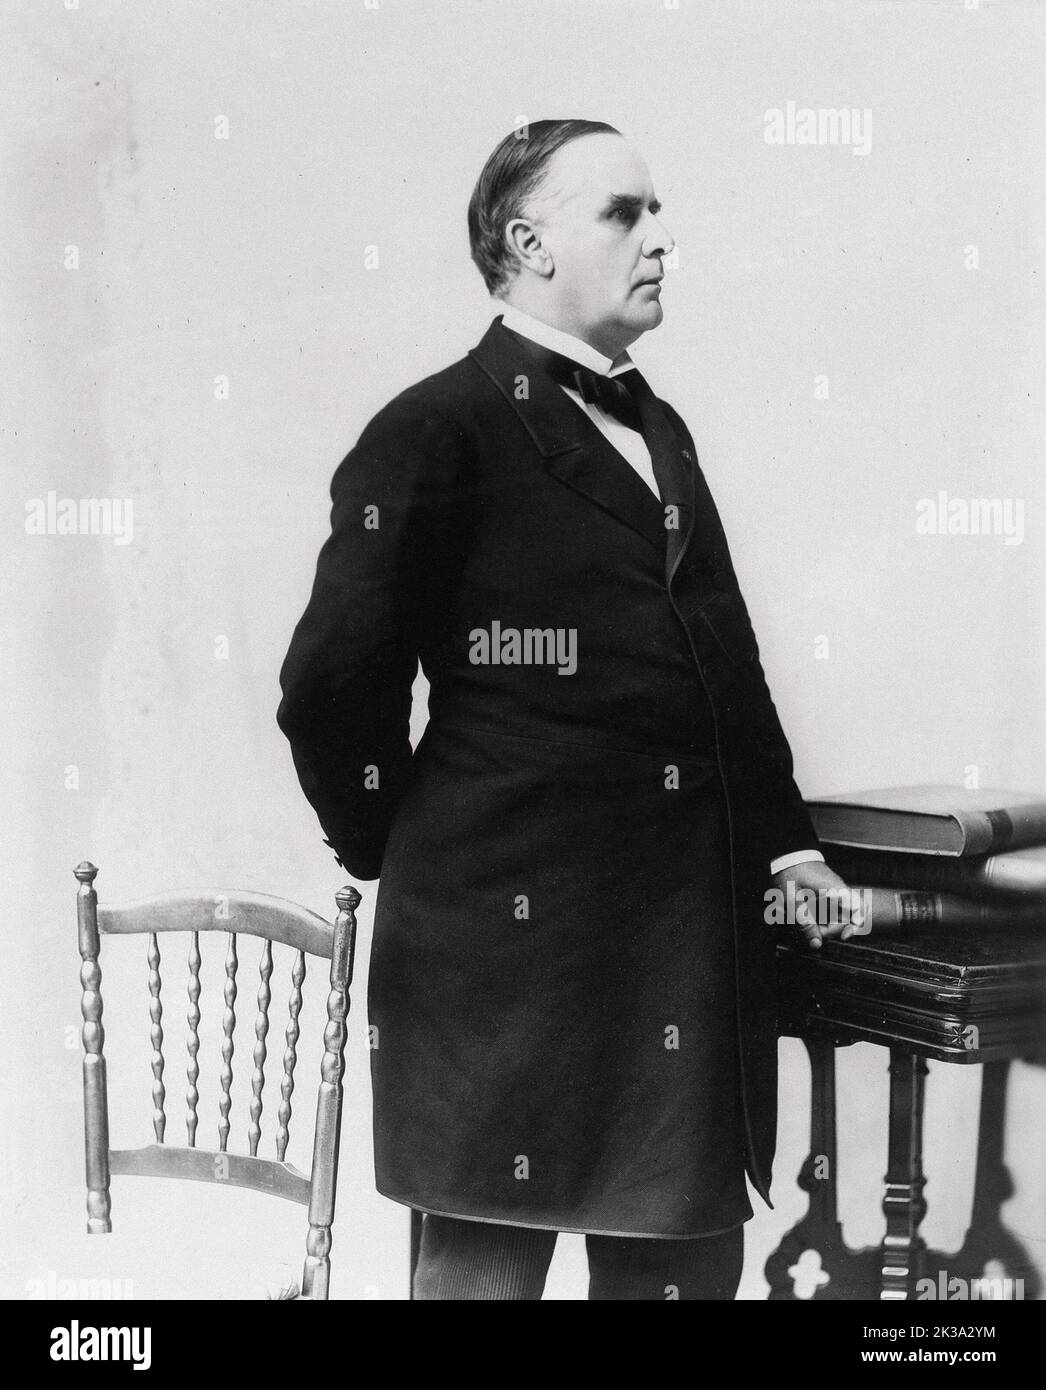 Ein Porträt des US-Präsidenten William McKinley aus dem Jahr 1894, als KcKinley 51 Jahre alt war. McKinley war 25. der Präsident der USA und der dritte von vier, die ermordet wurden. Er wurde am 6.. September 1901 von Leon Czolgosz angeschossen. Wie James Garfield erholte sich McKinley kurz von den Wunden, um einige Zeit später an einer Sepsis zu sterben. In diesem Stich wird er als Präsidentschaftskandidat gesehen. Stockfoto